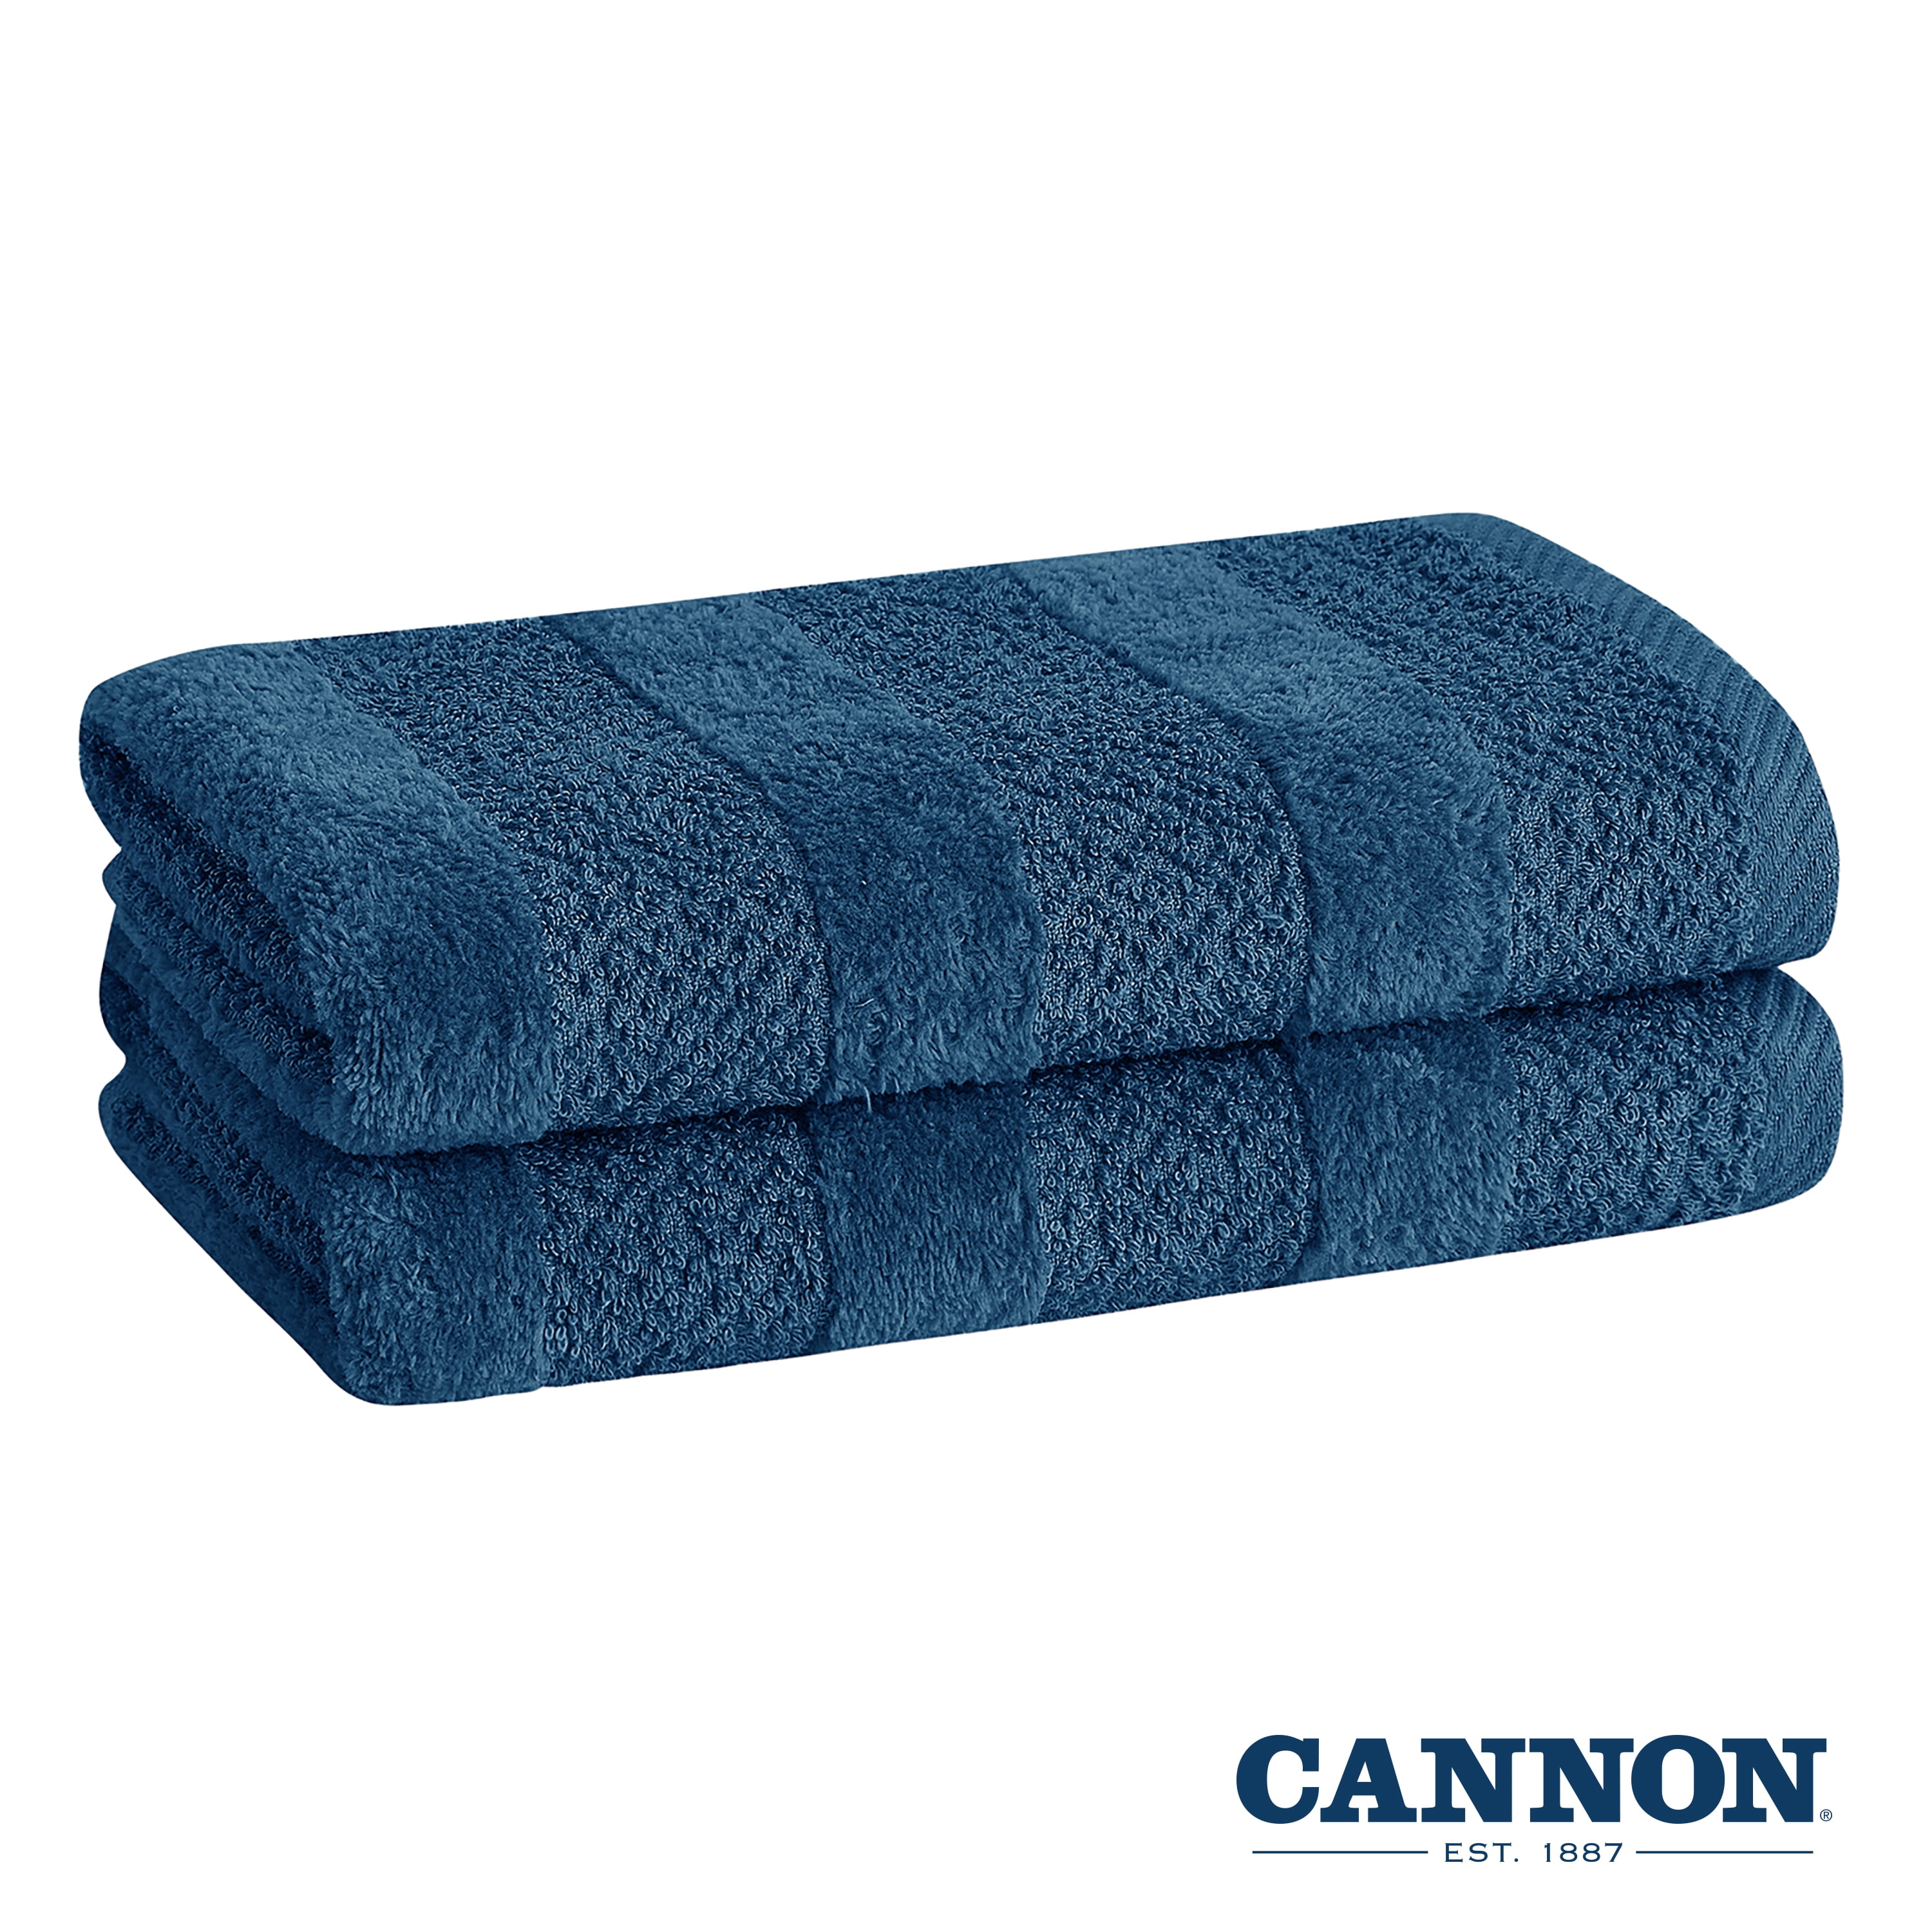 Huson 3 Piece 900 GSM 100% Egyptian Cotton Towel Set Alcott Hill Color: Navy Blue